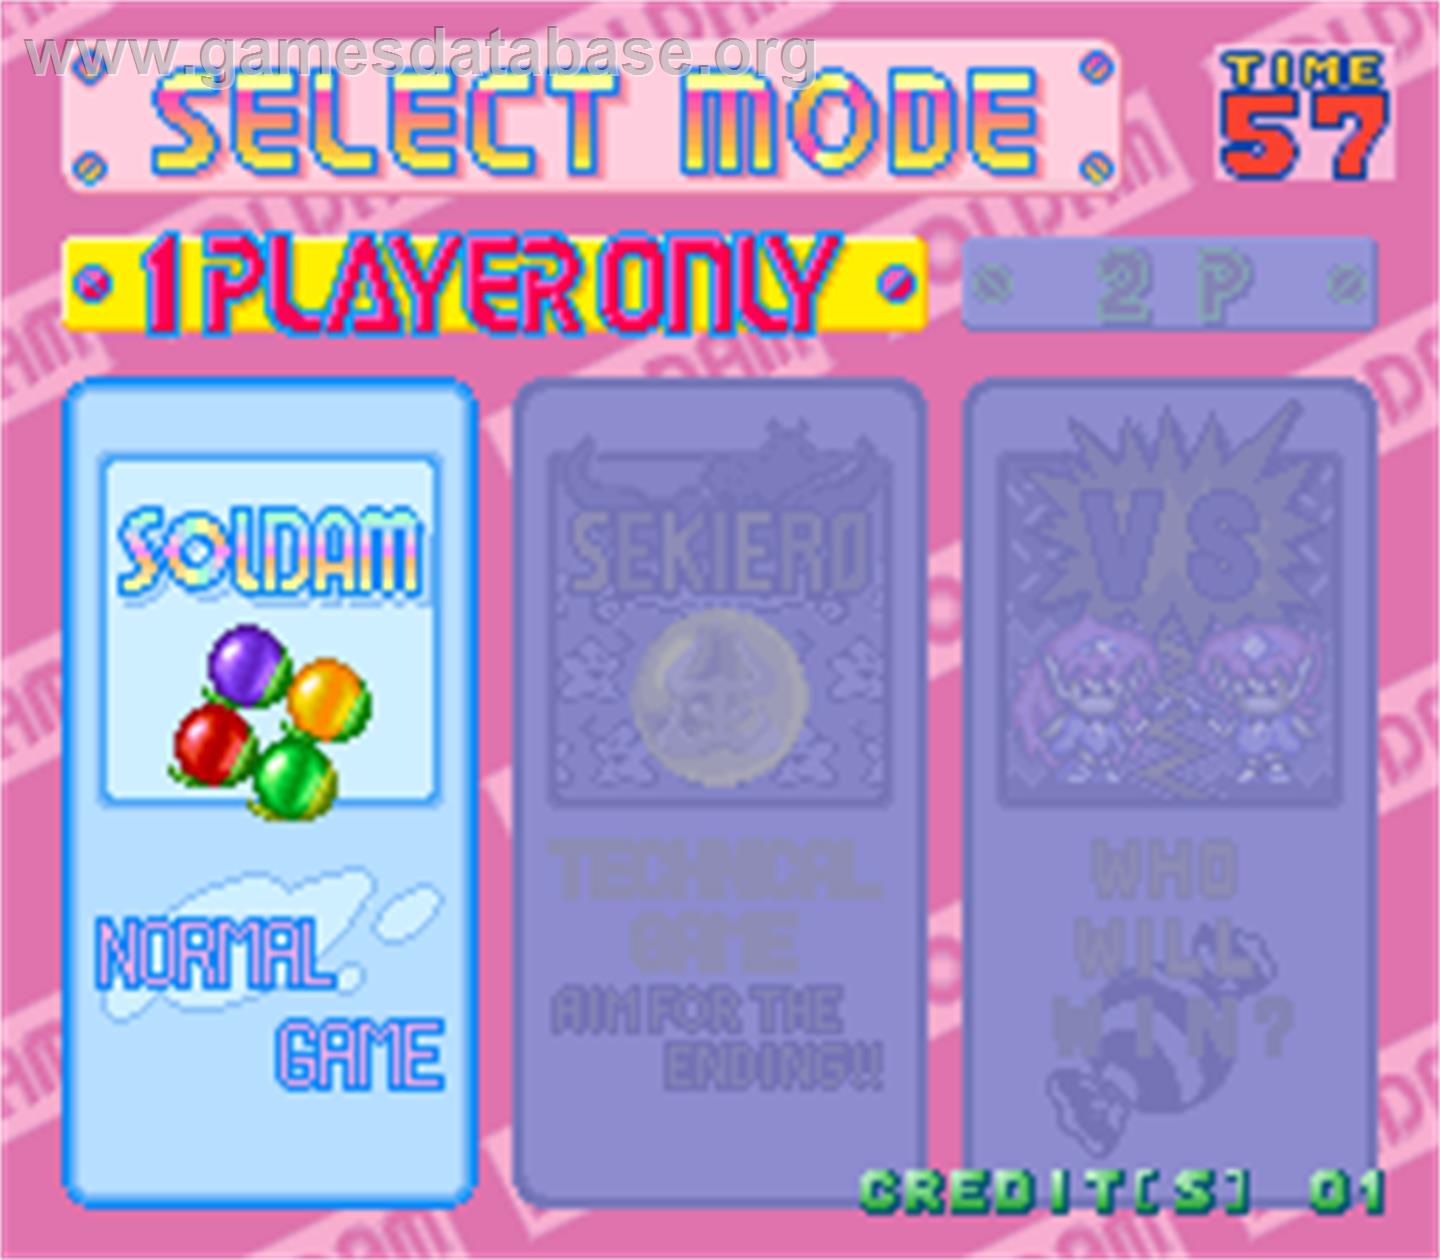 Soldam - Arcade - Artwork - Select Screen